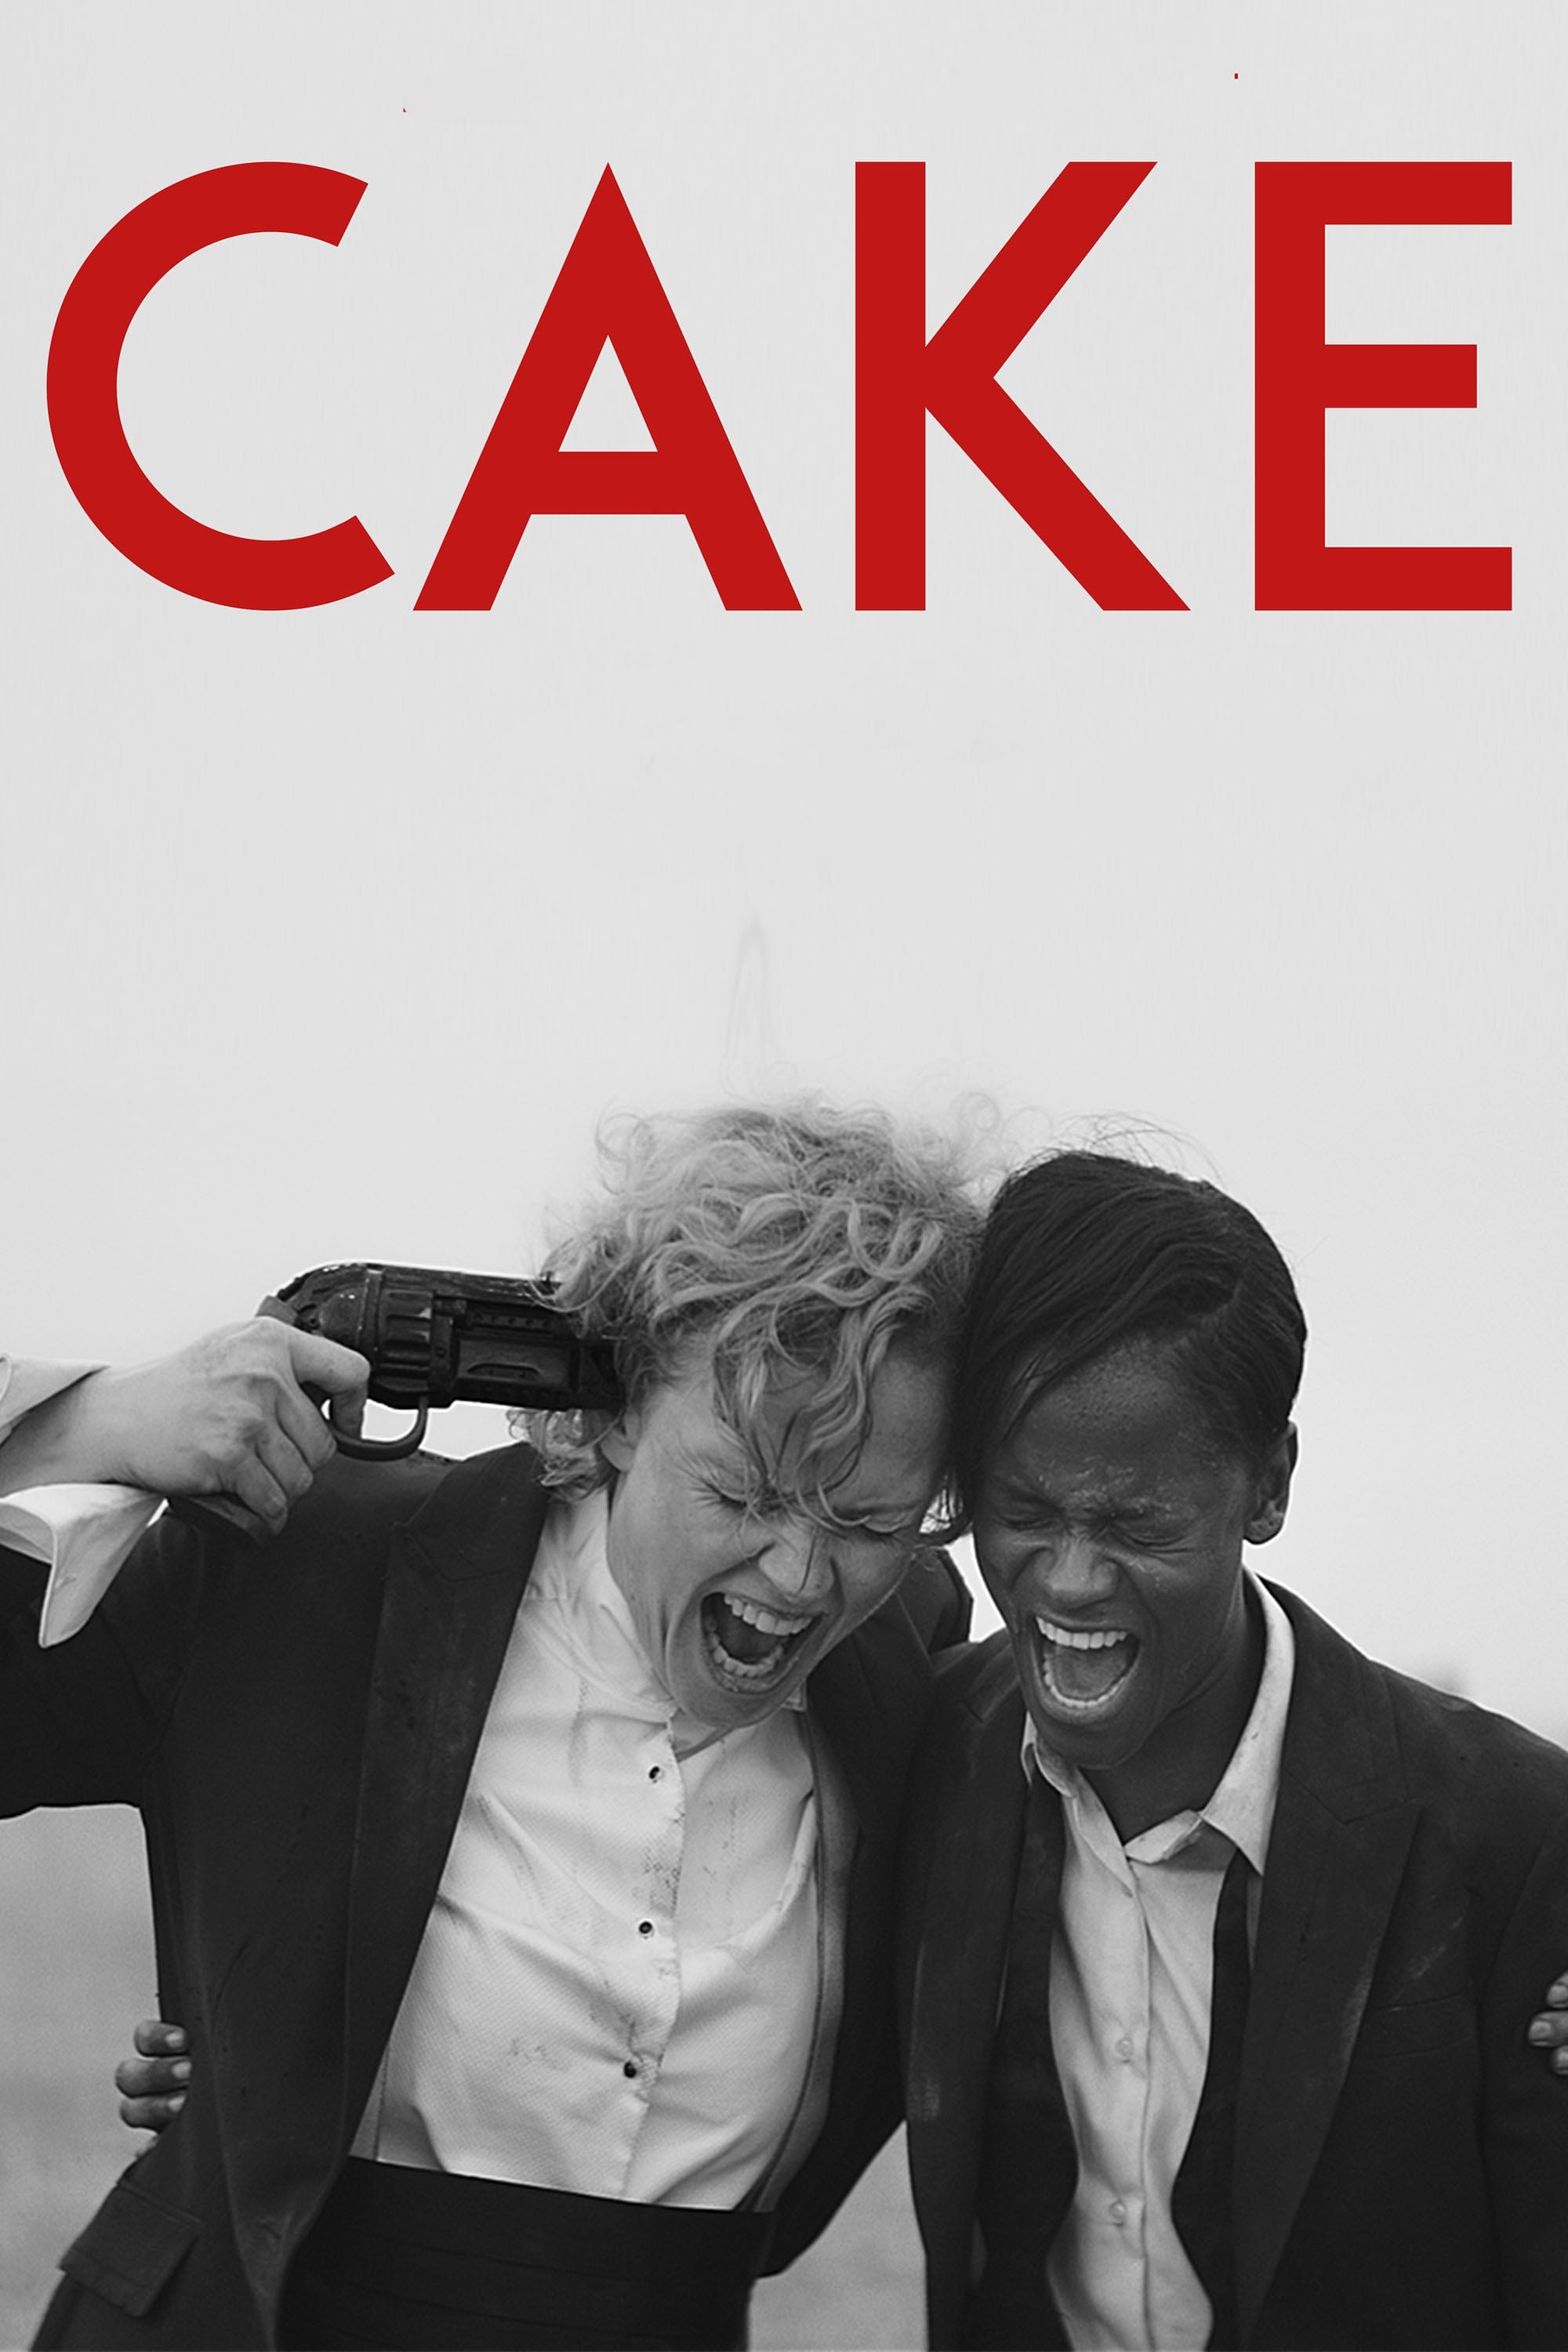 Cake film